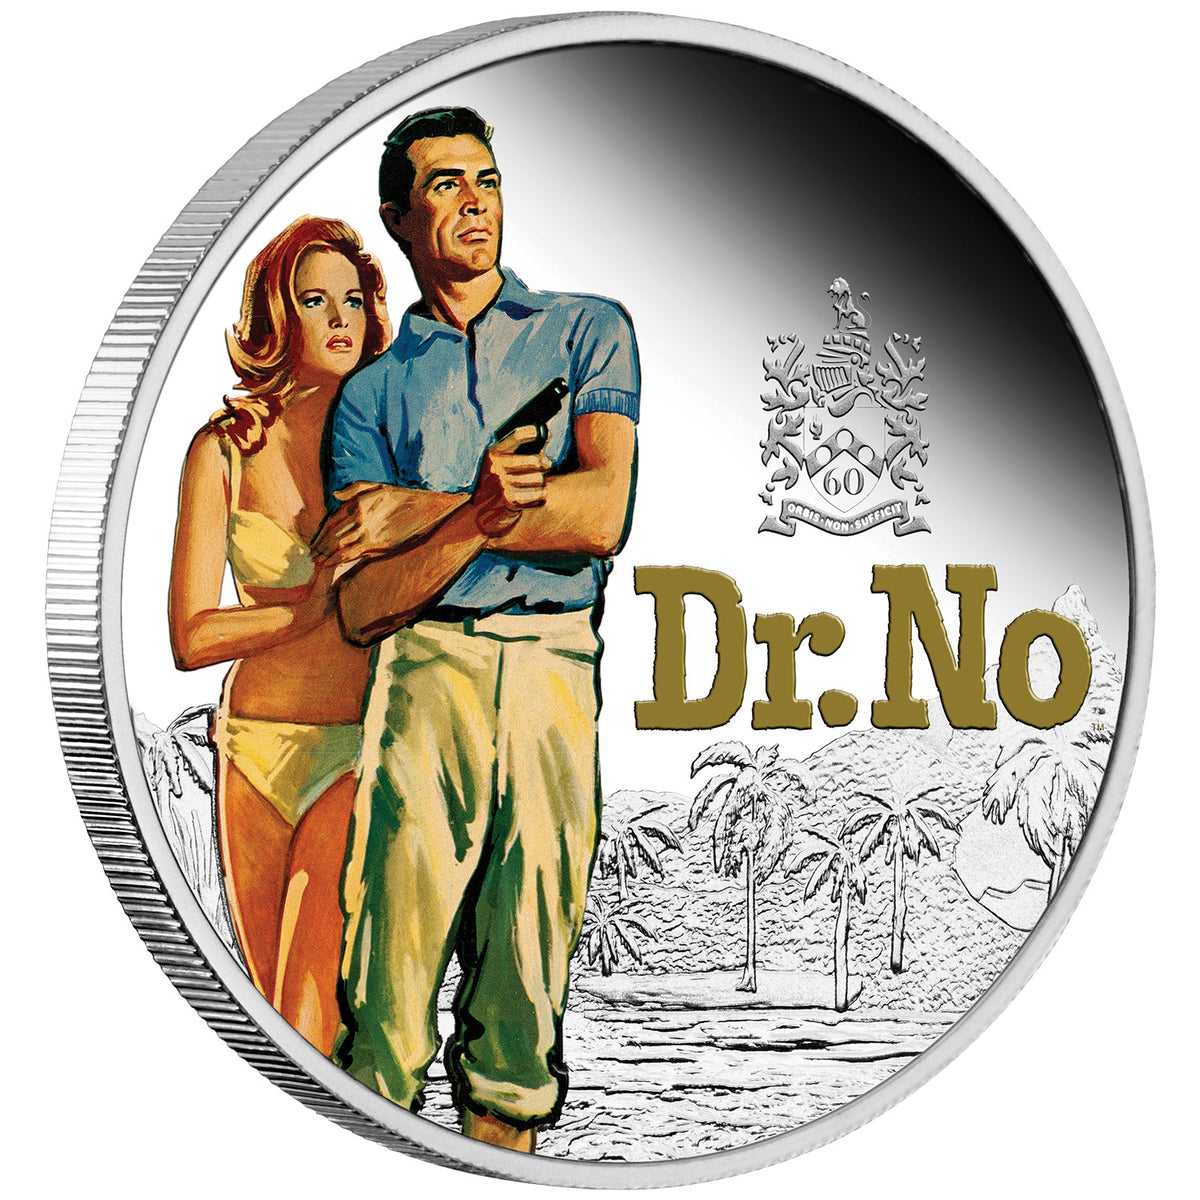 James Bond 1 oz Silbermünze in Proof-Farbe – Dr. No 60. Jubiläumsausgabe, nummeriert – von der Perth Mint